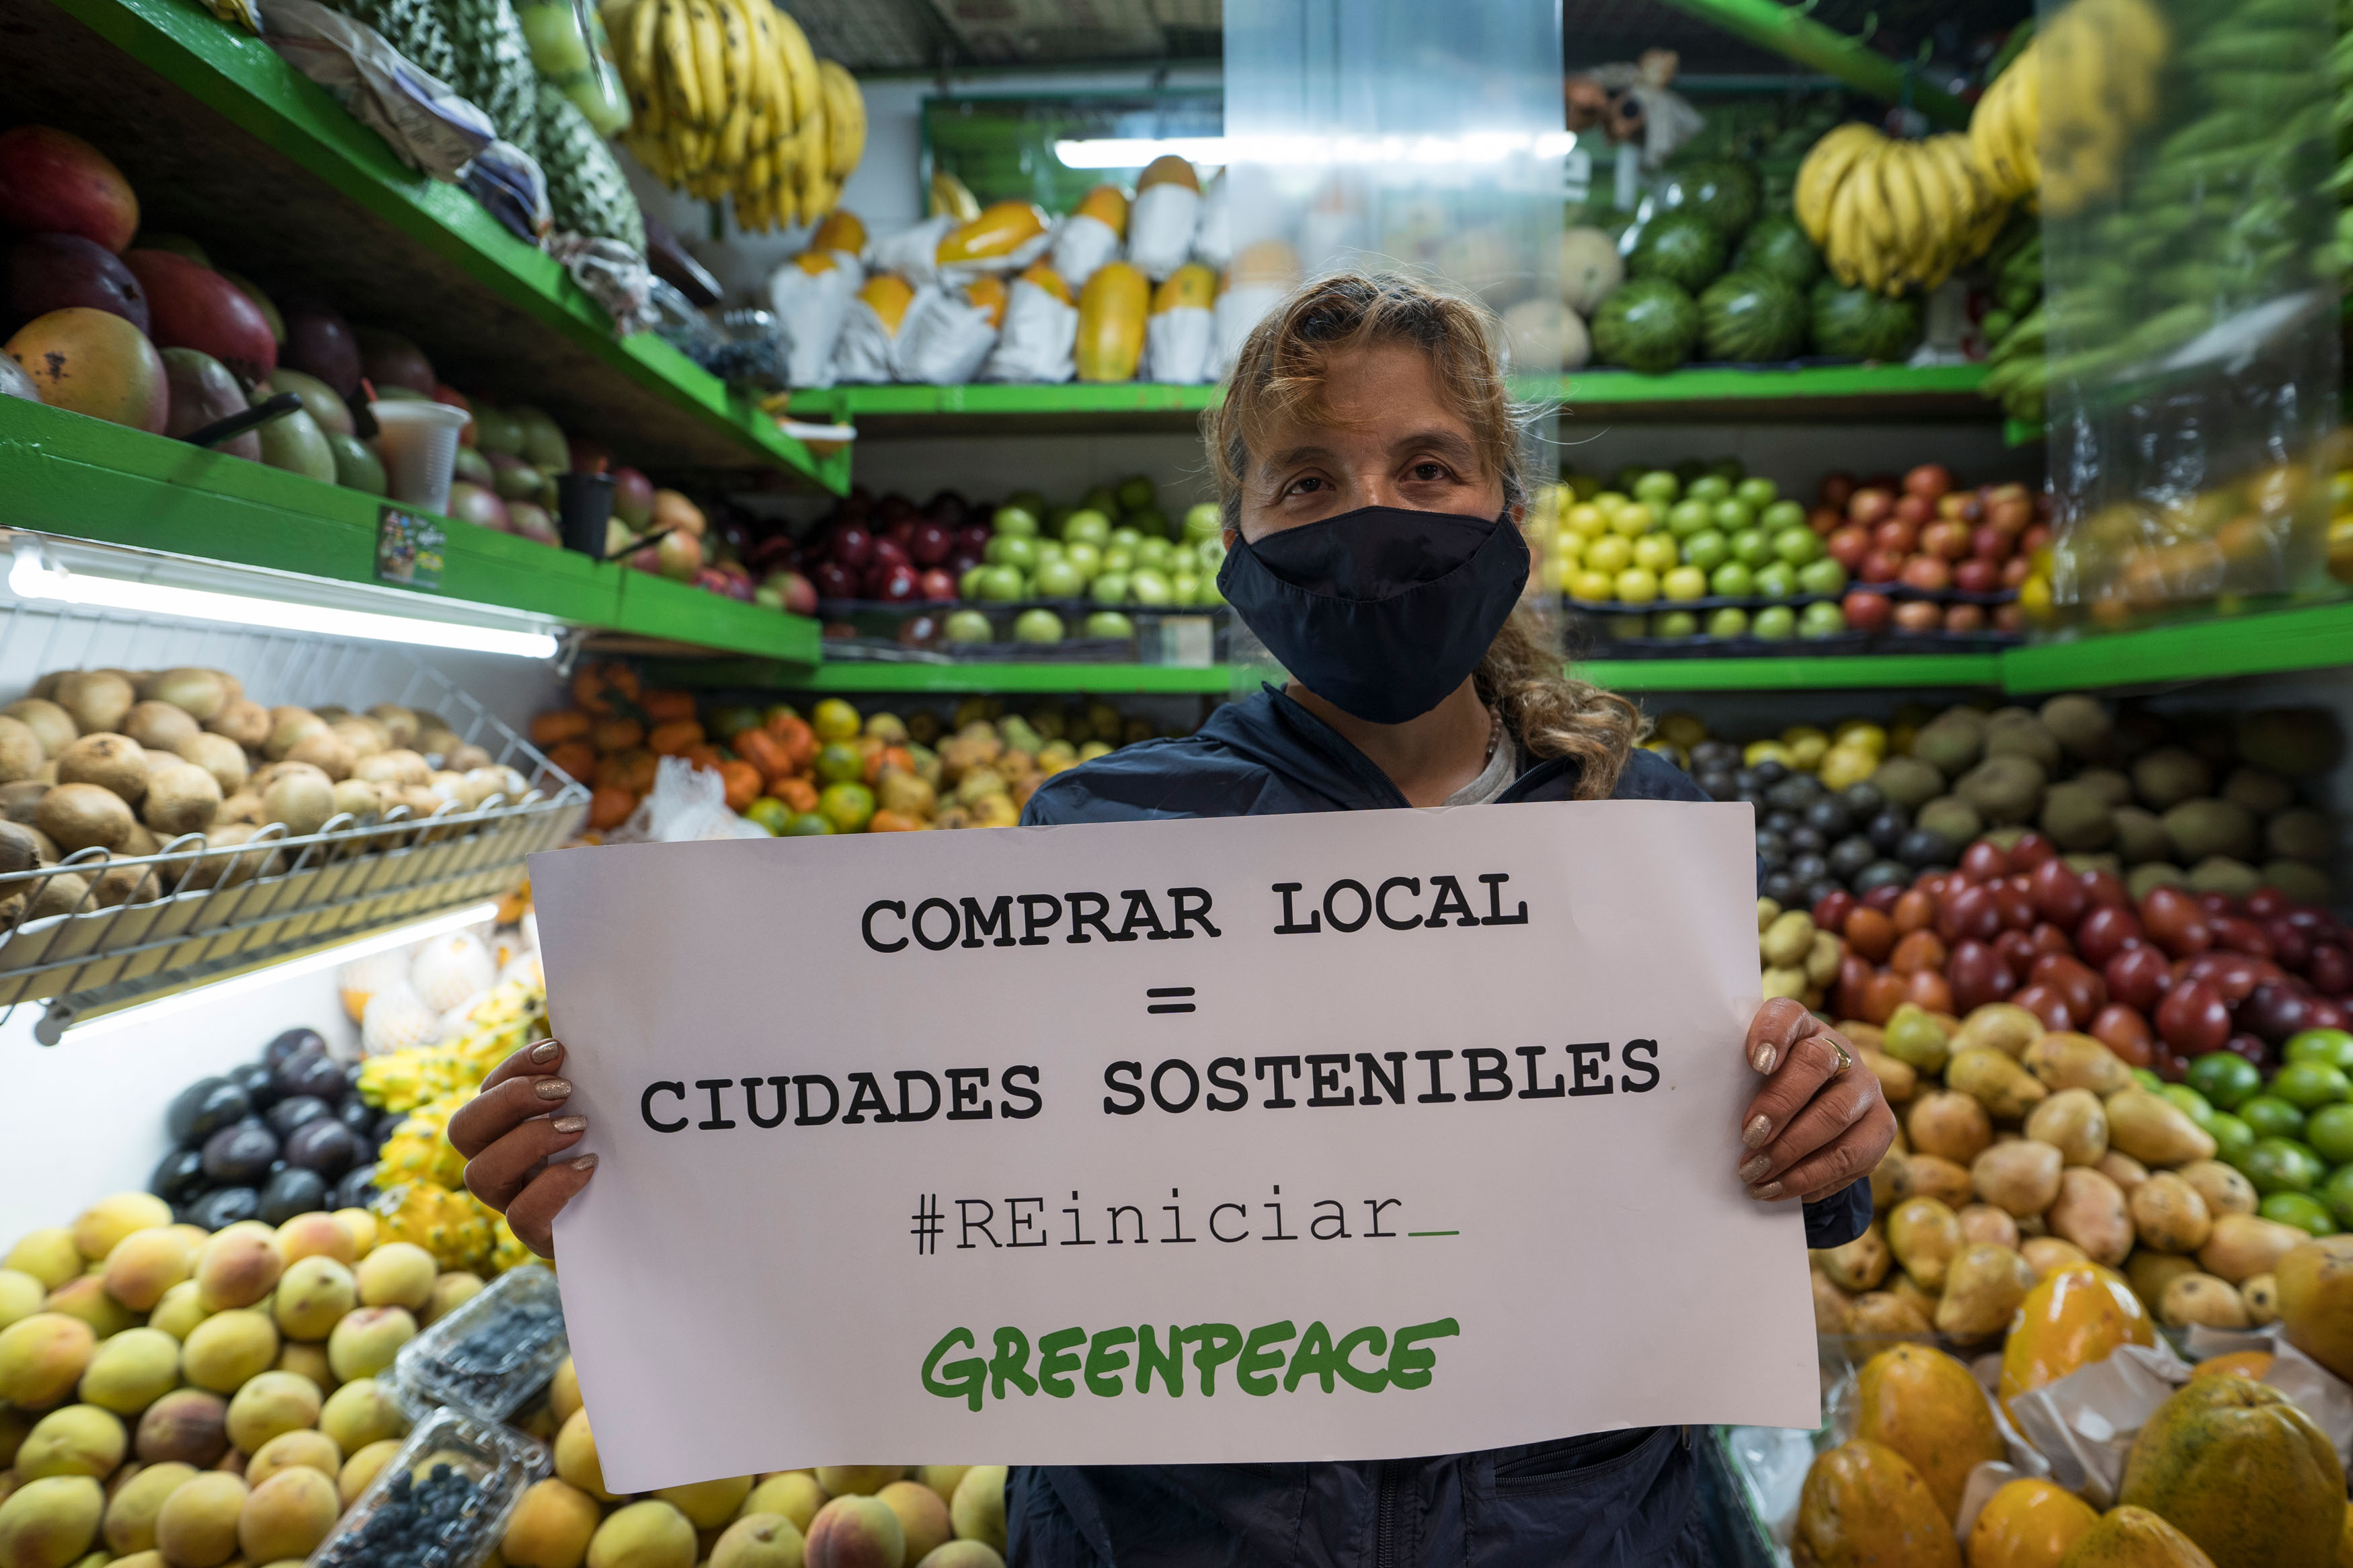 5 razones por las que comprar local es mejor que comprar en grandes tiendas  - Greenpeace Colombia